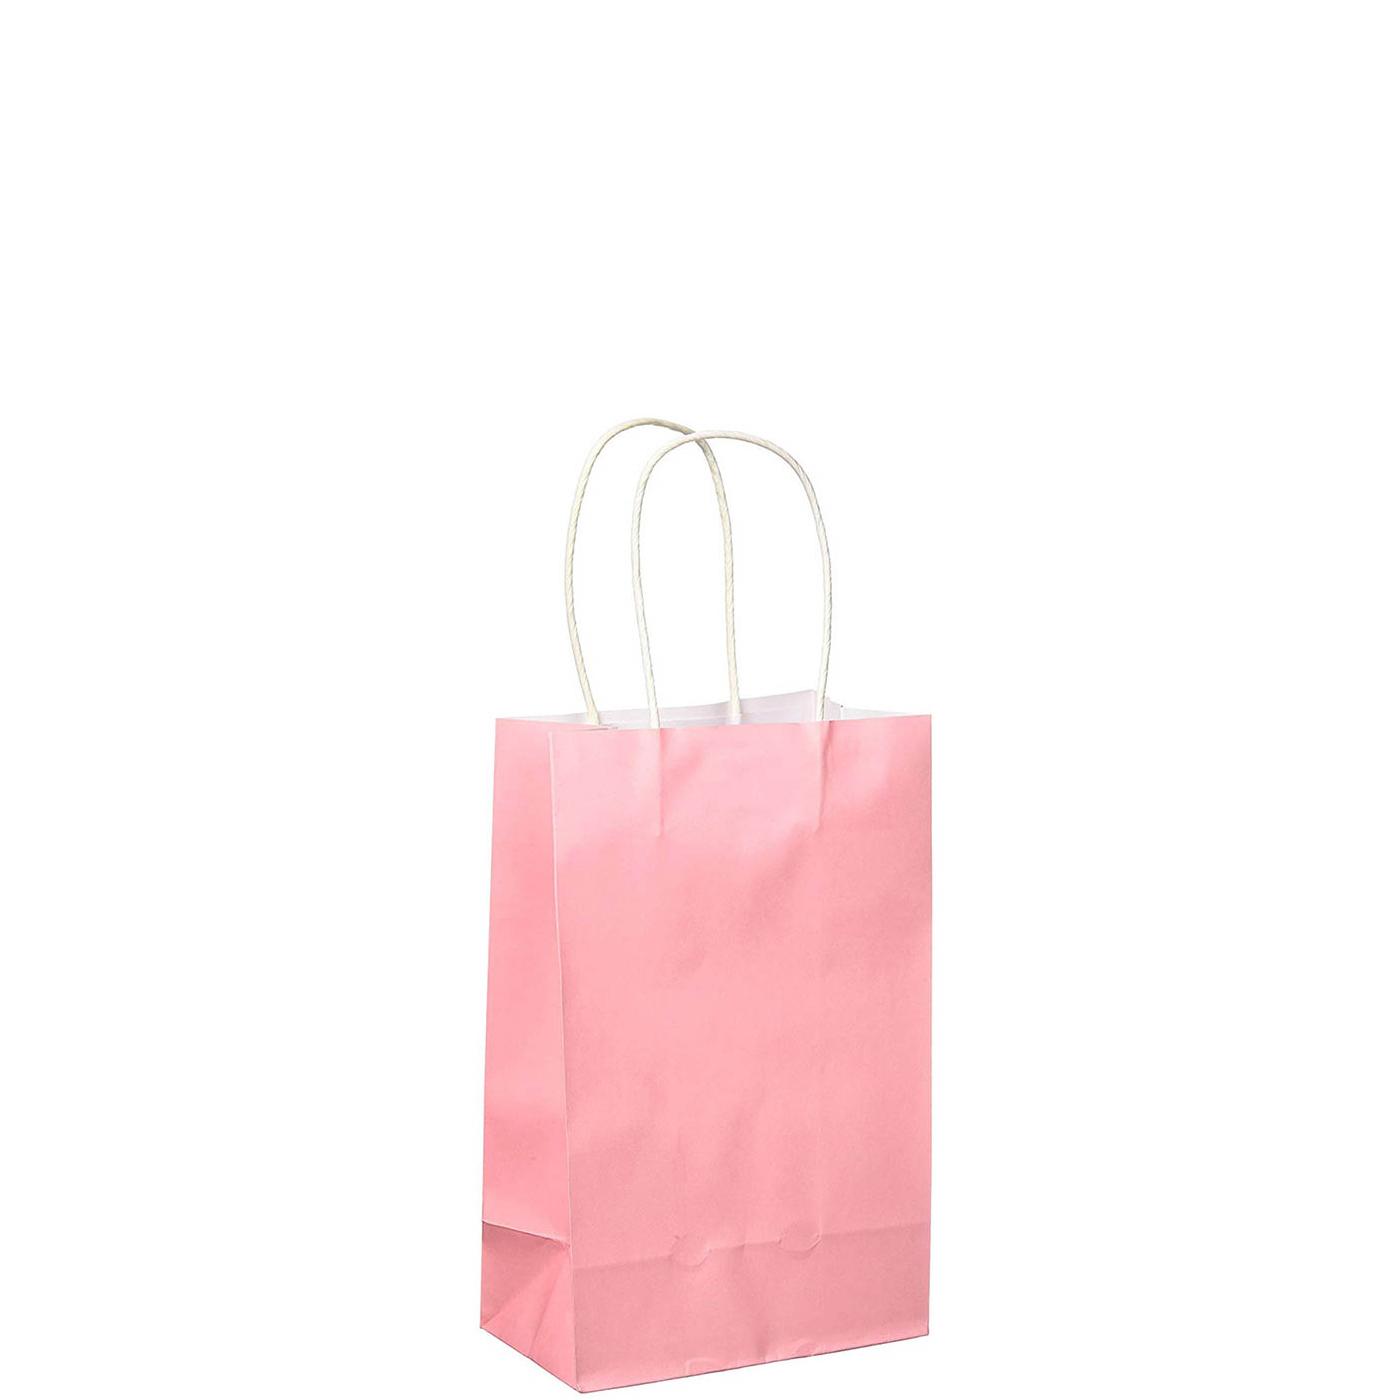 New Pink Cub Bag Value Pack 10pcs Party Favors - Party Centre